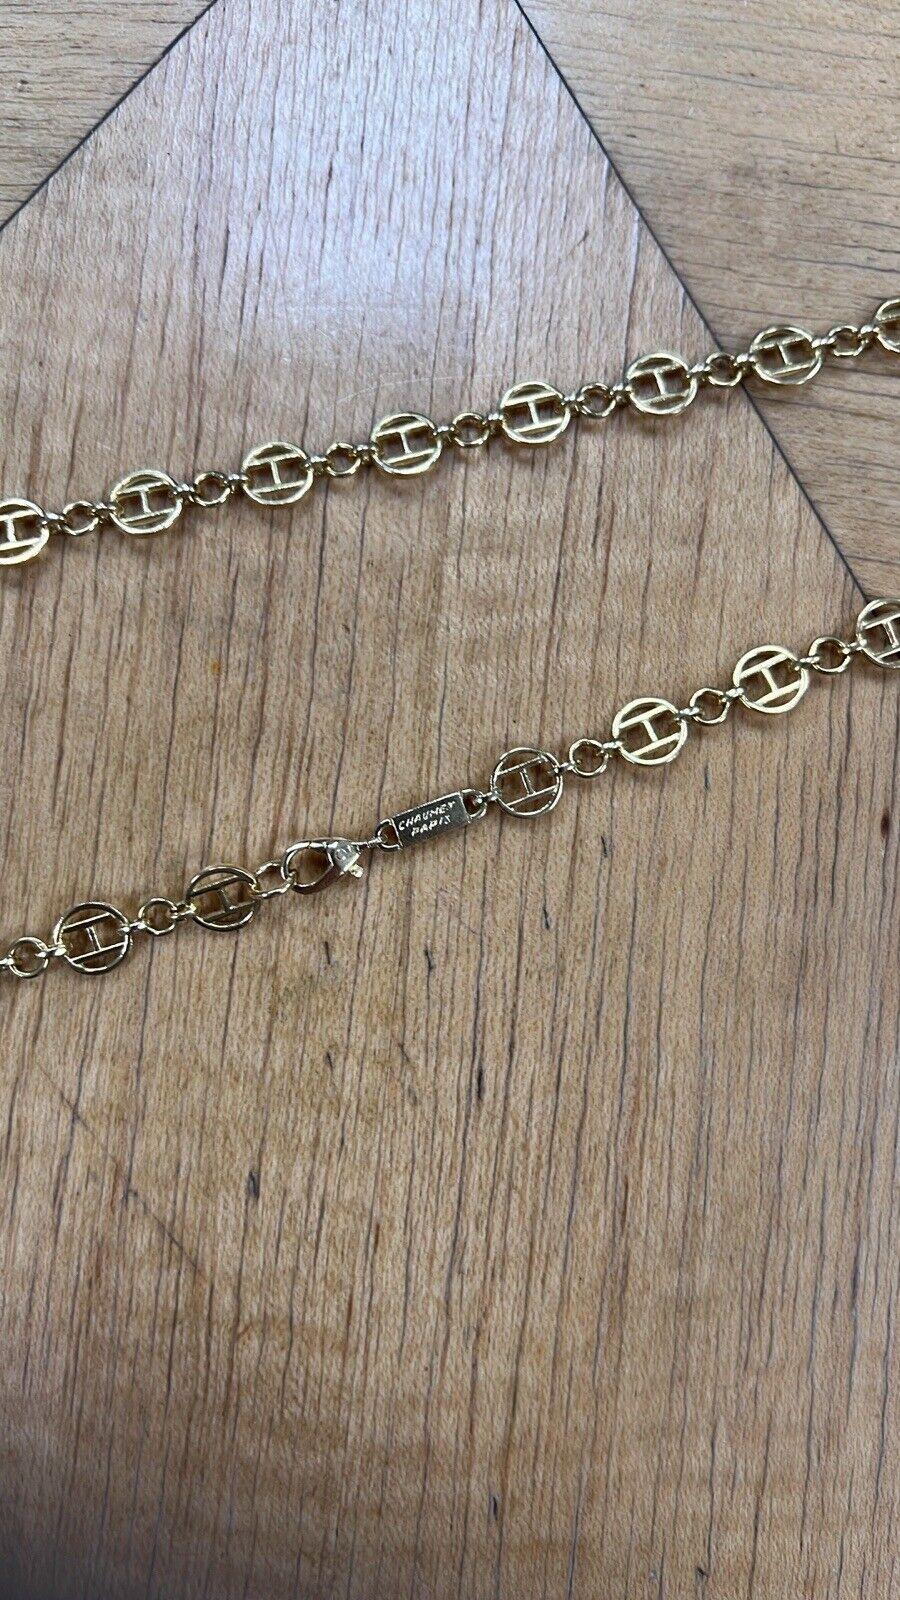 CHAUMET PARIS 18k Yellow Gold Sautoir Link Chain Necklace Circa 1970s Rare For Sale 3